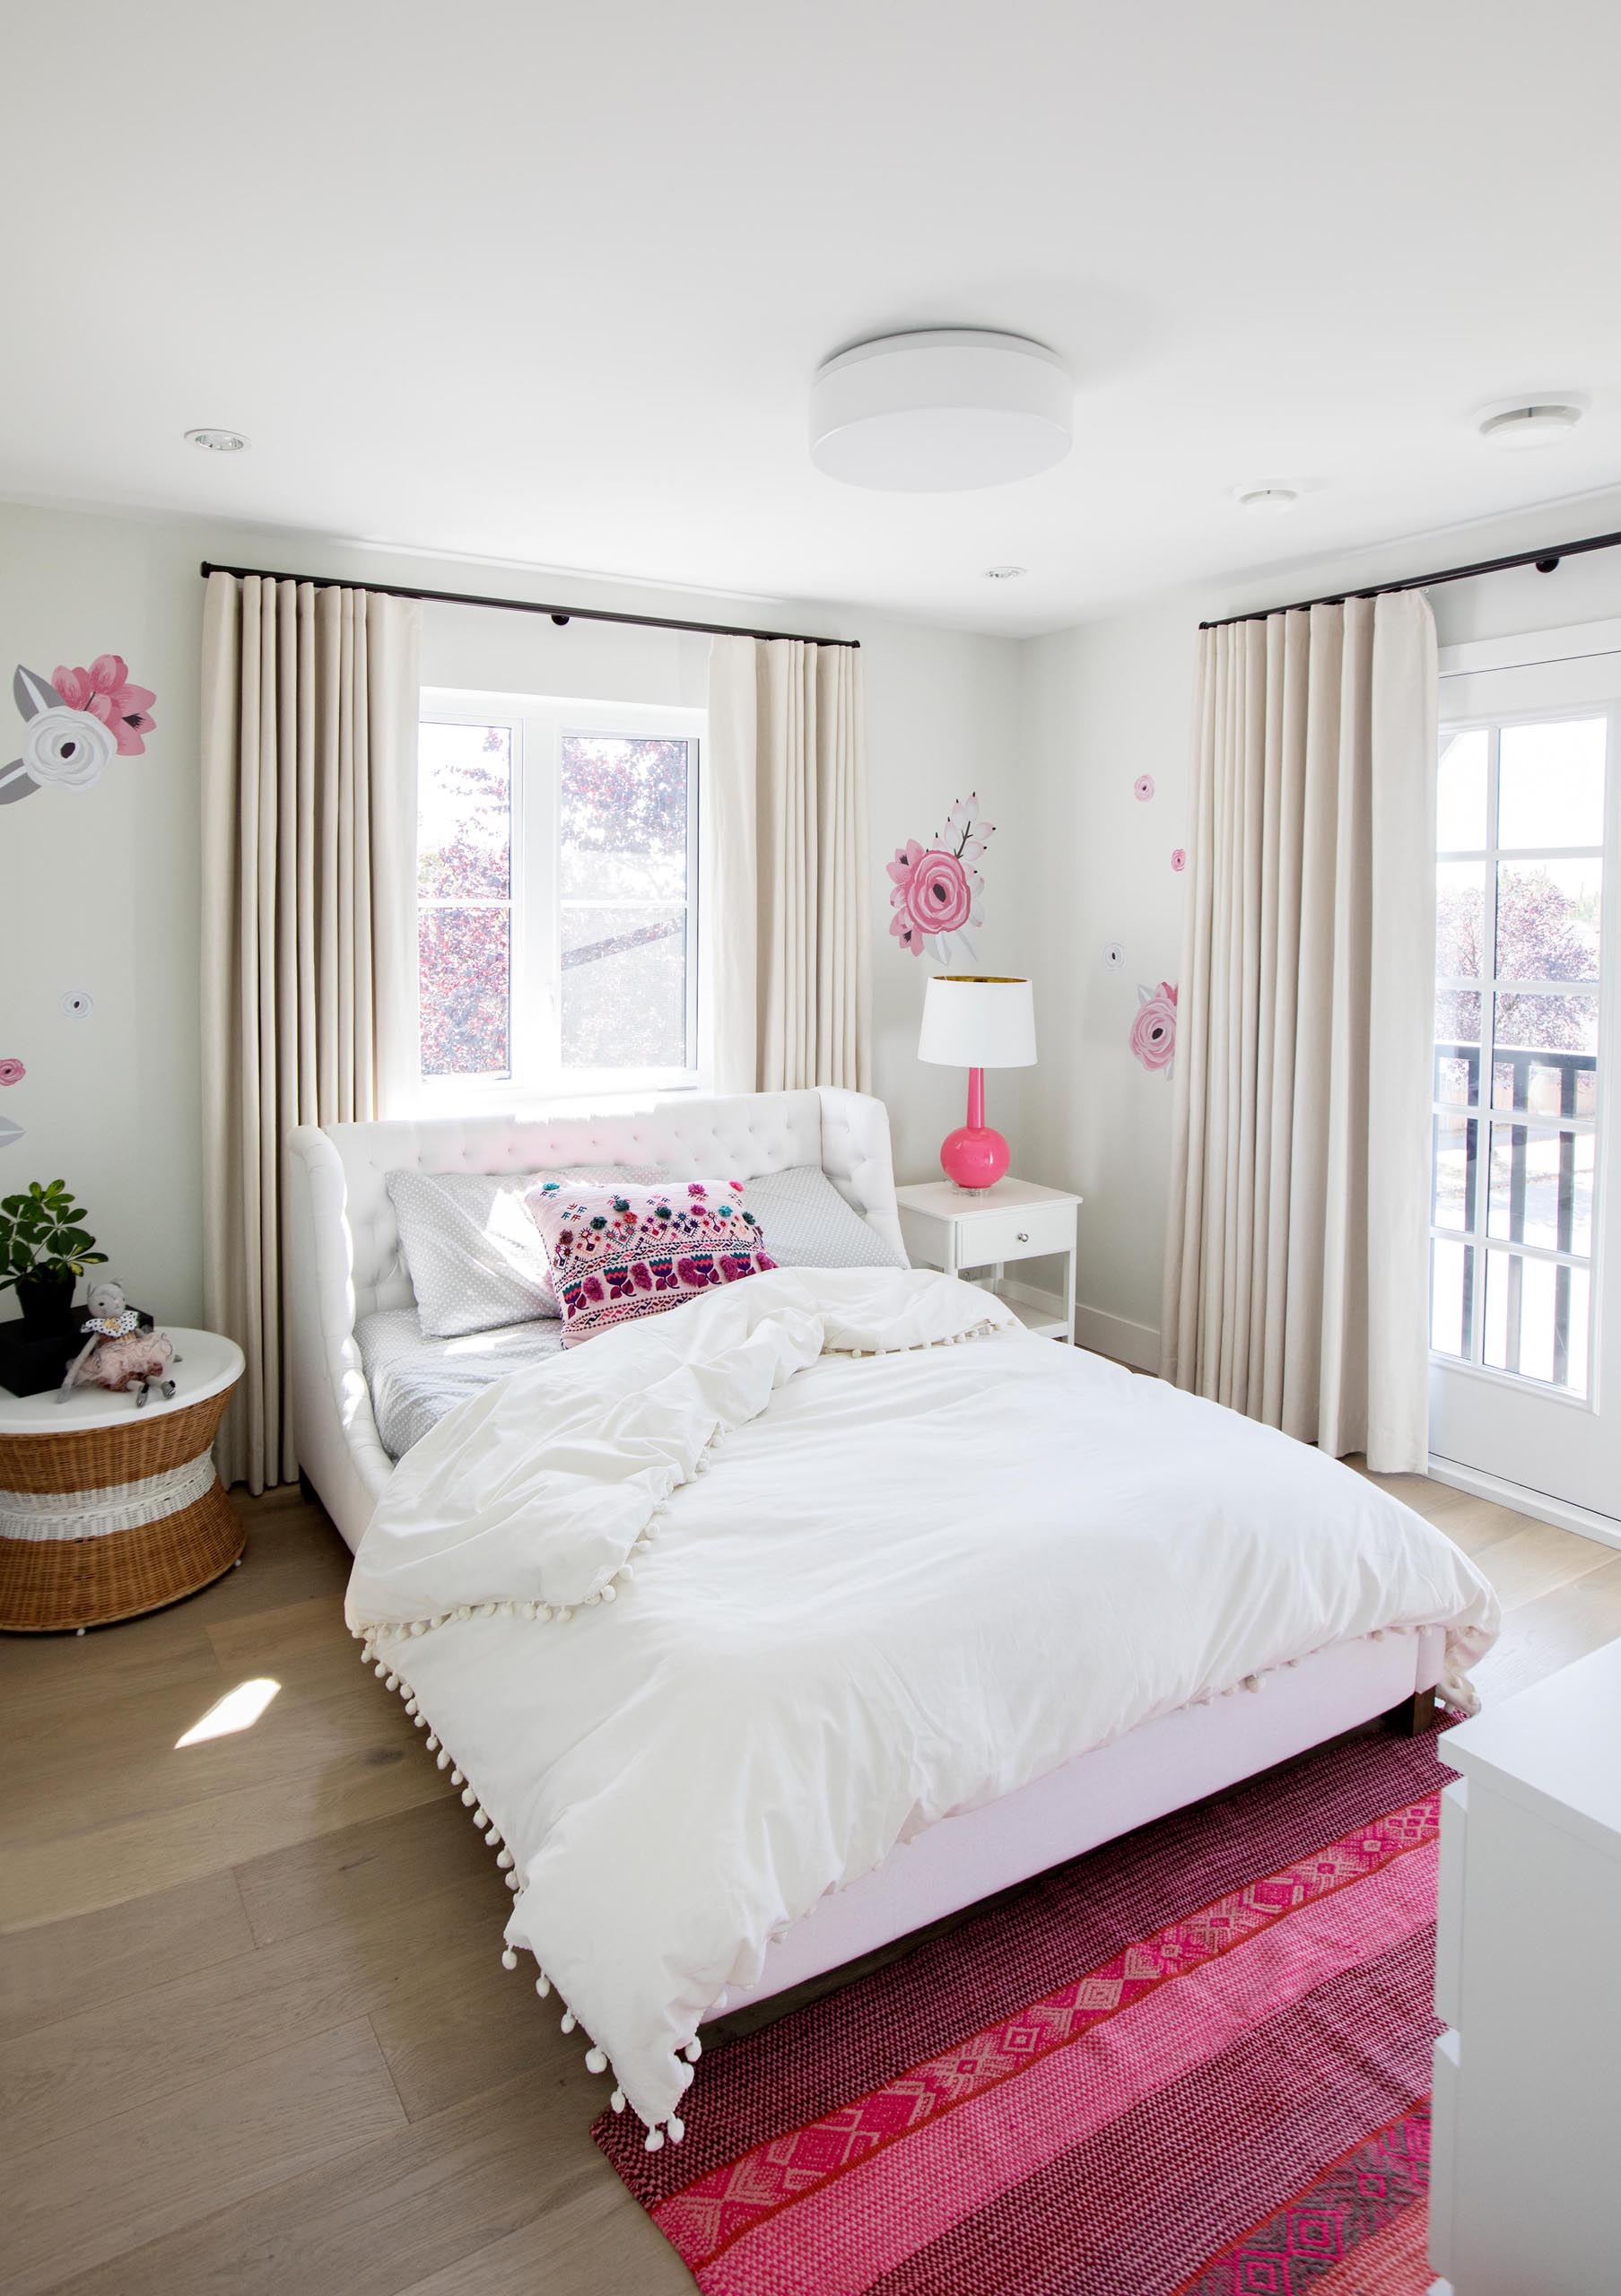 В этой спальне выбрана бело-розовая цветовая палитра. Цветочные акценты украшают стены, а в изголовье кровати расположен полосатый розовый коврик,